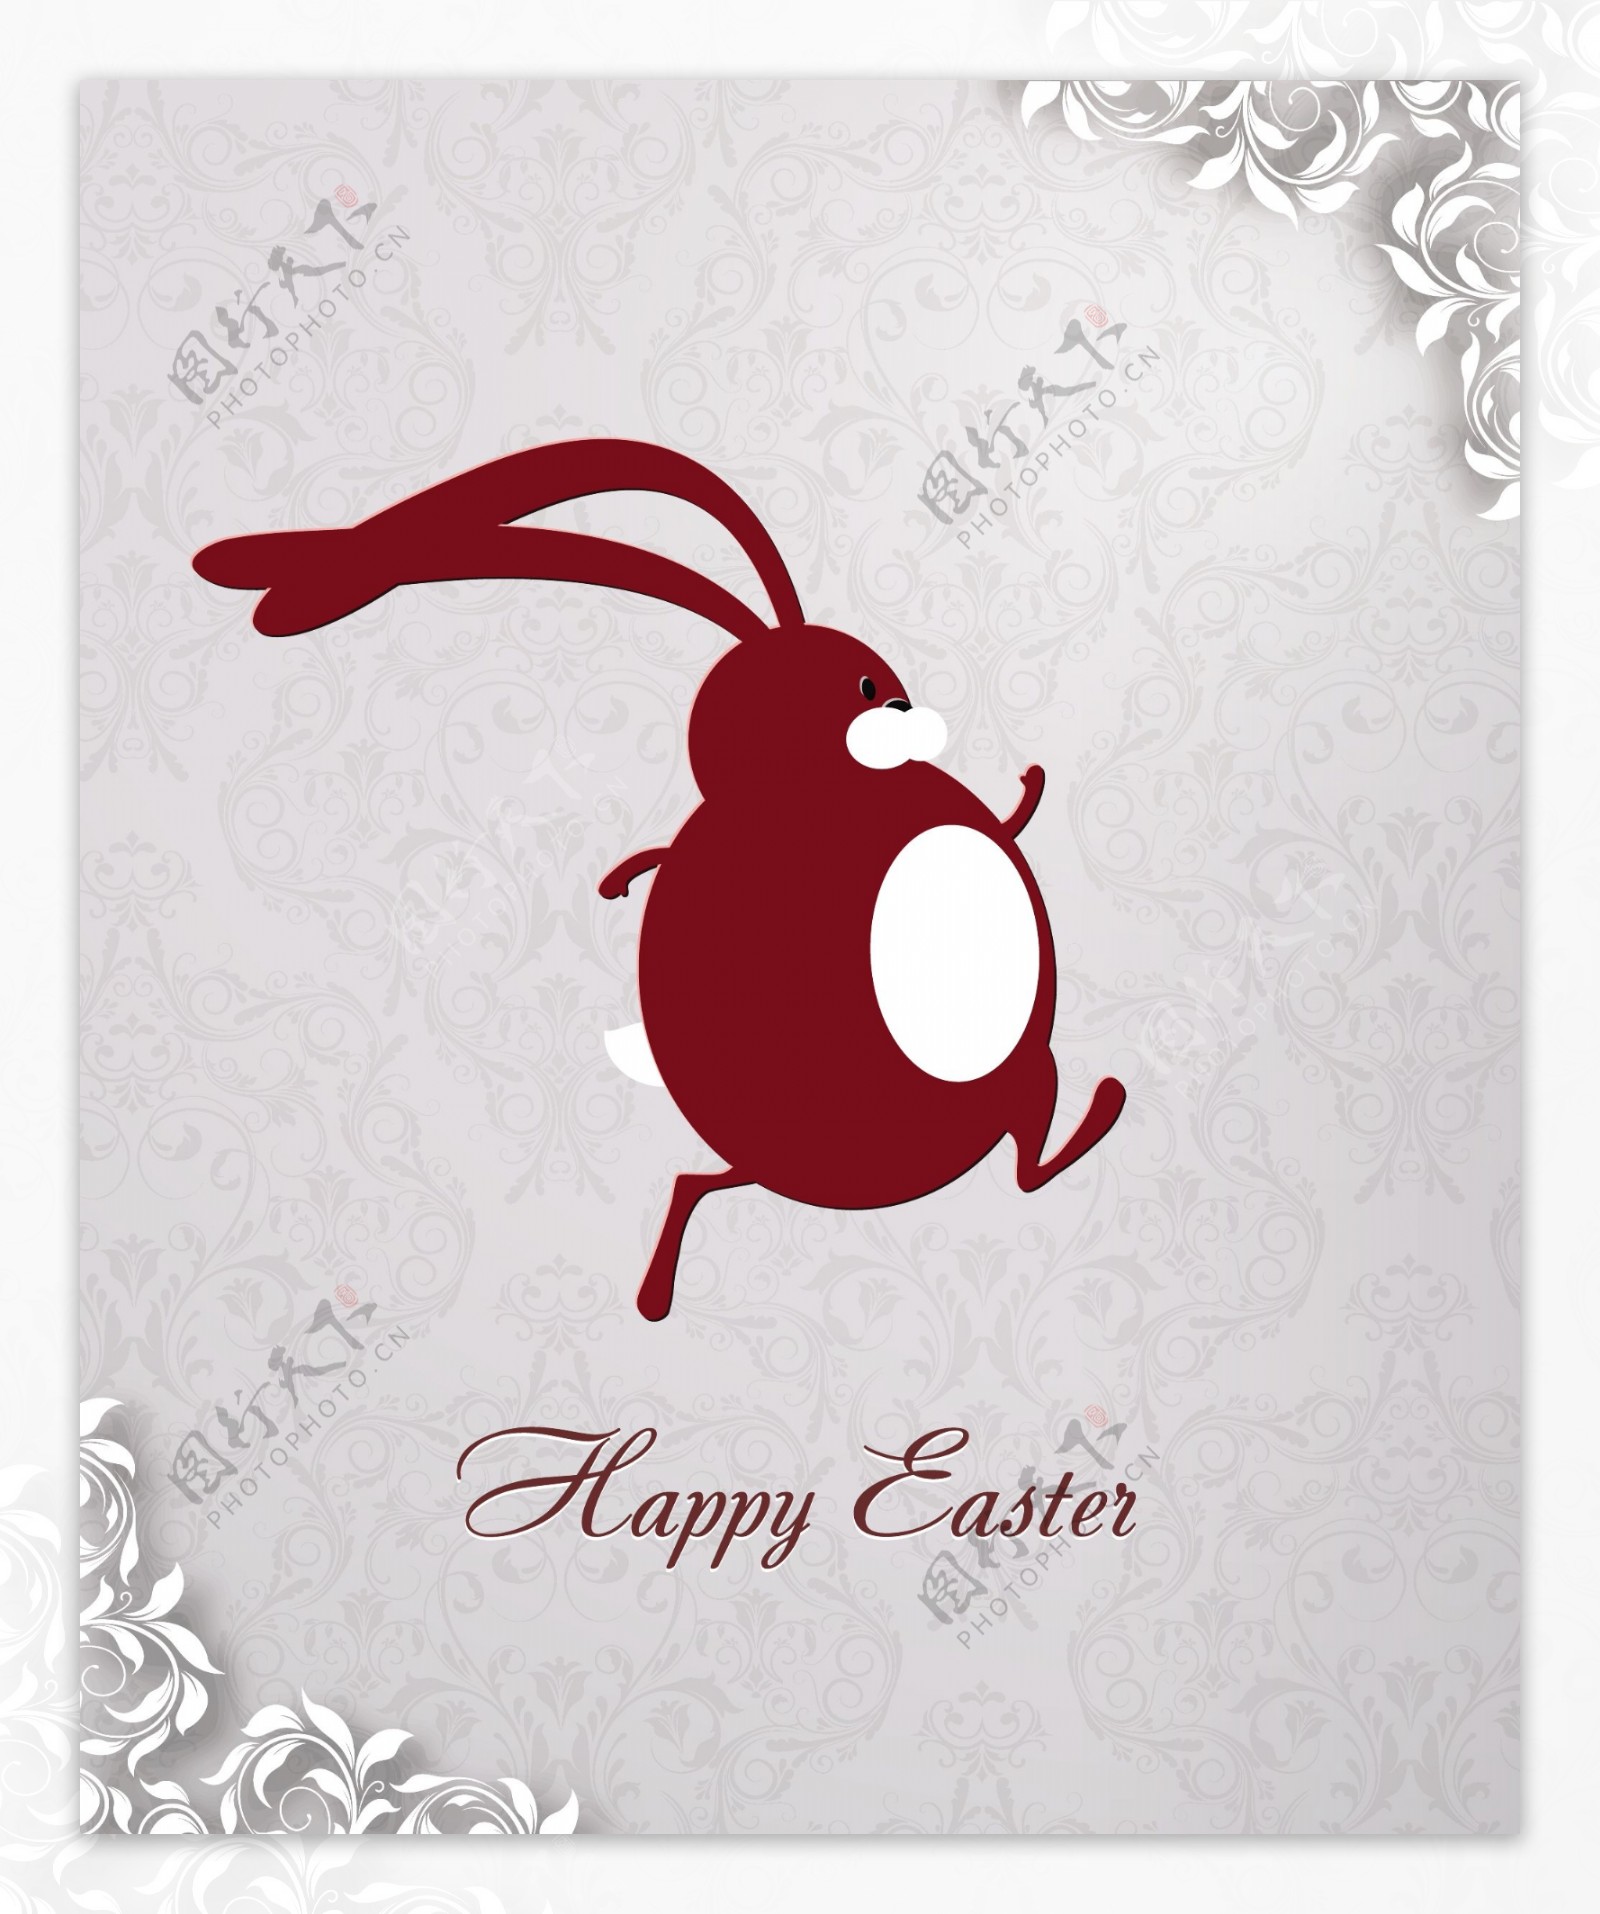 复活节插画与flowal背景的复活节兔子